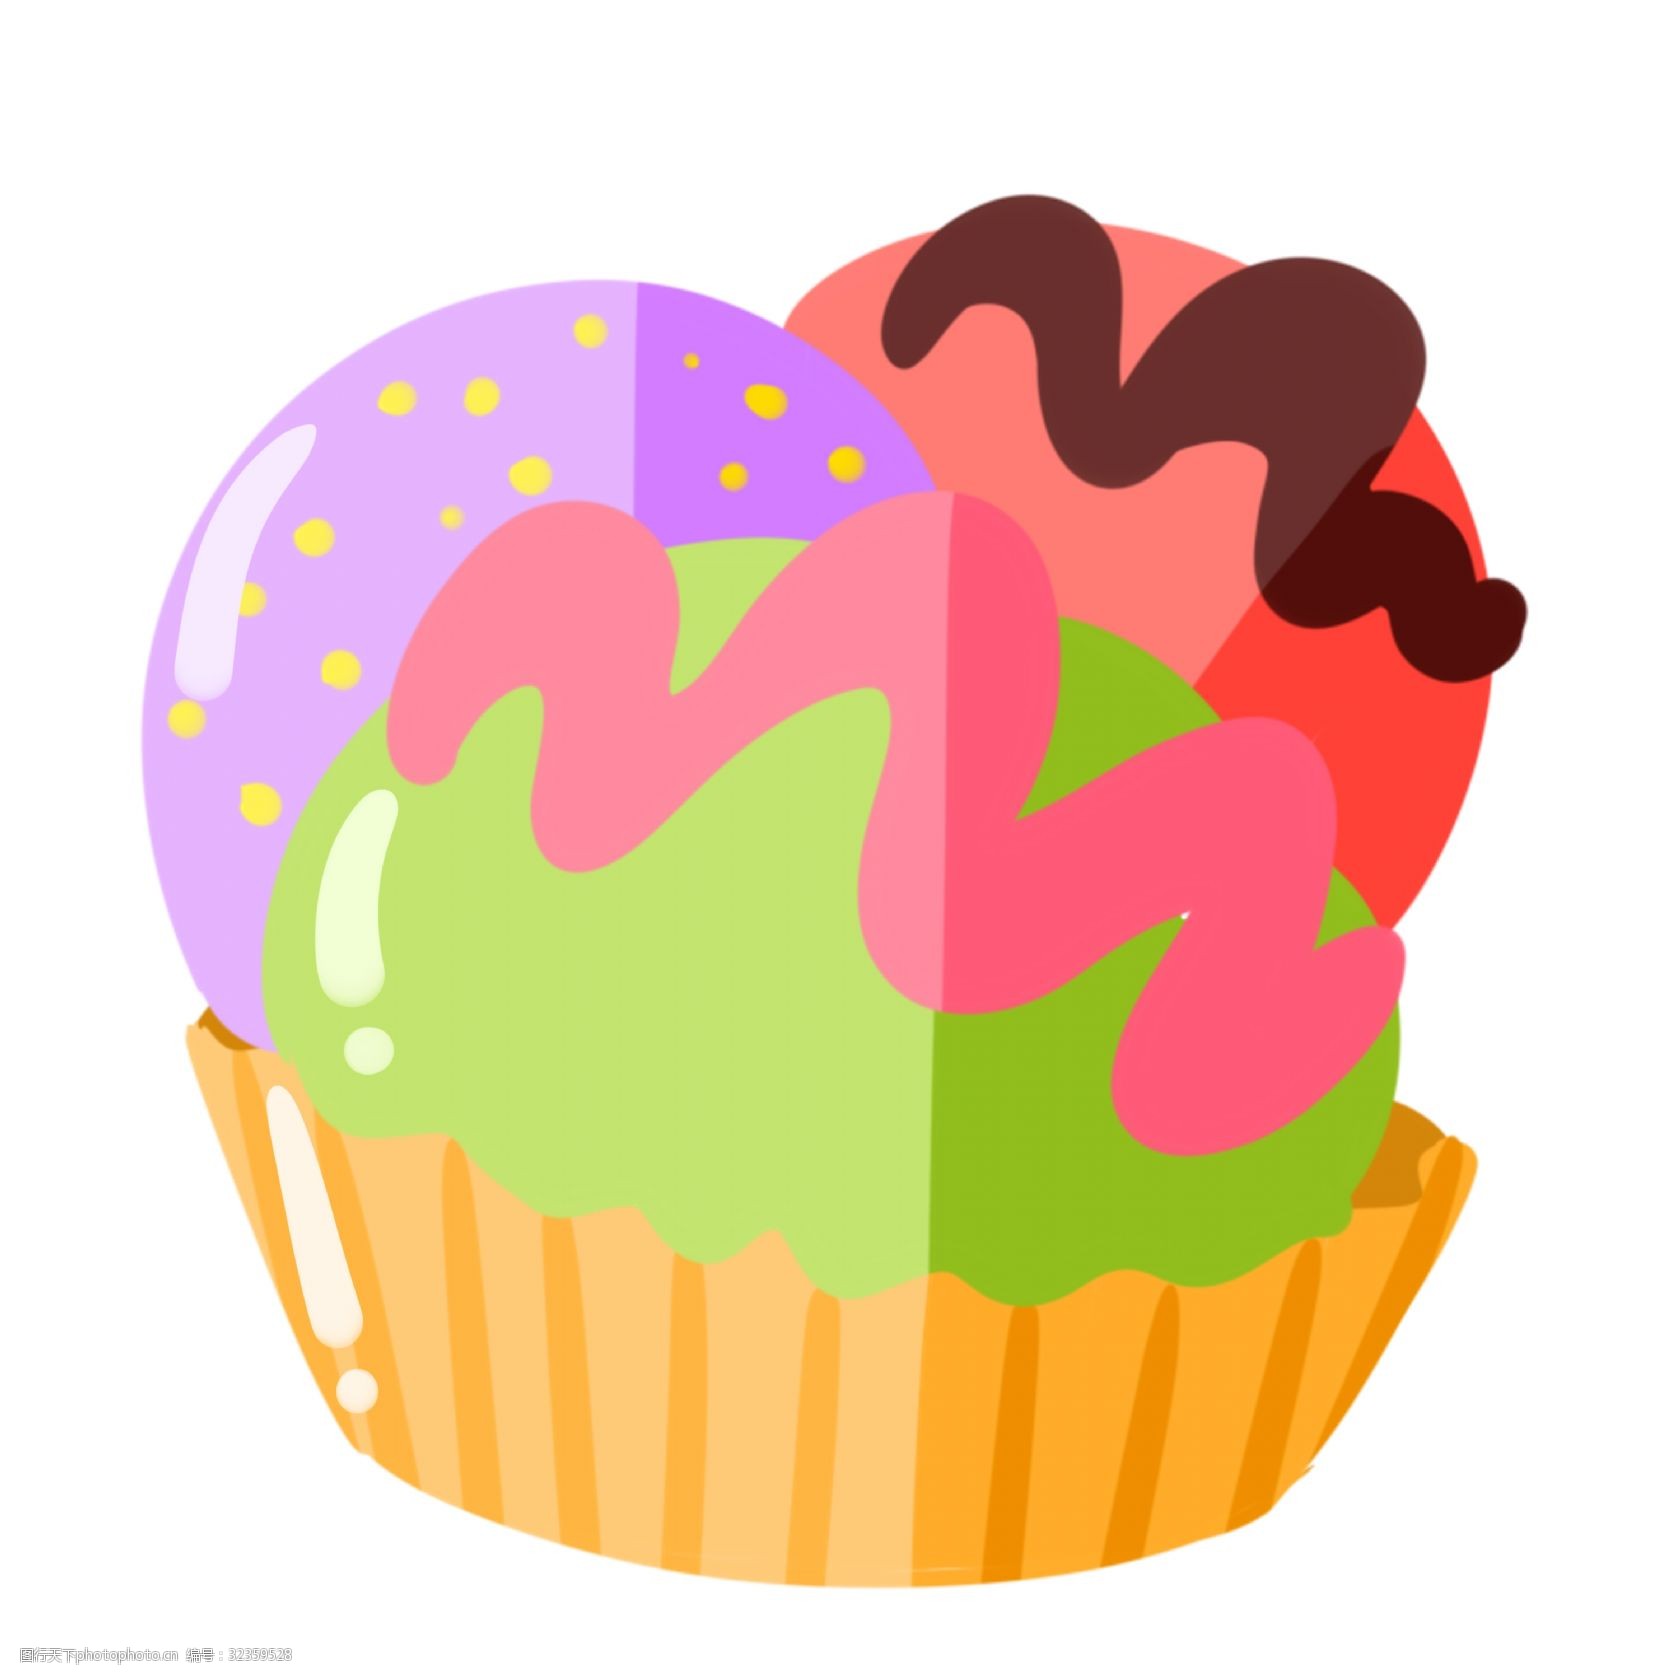 关键词:美味的冰激凌蛋糕 冰激凌蛋糕 蛋糕 卡通蛋糕插画 零食 甜点